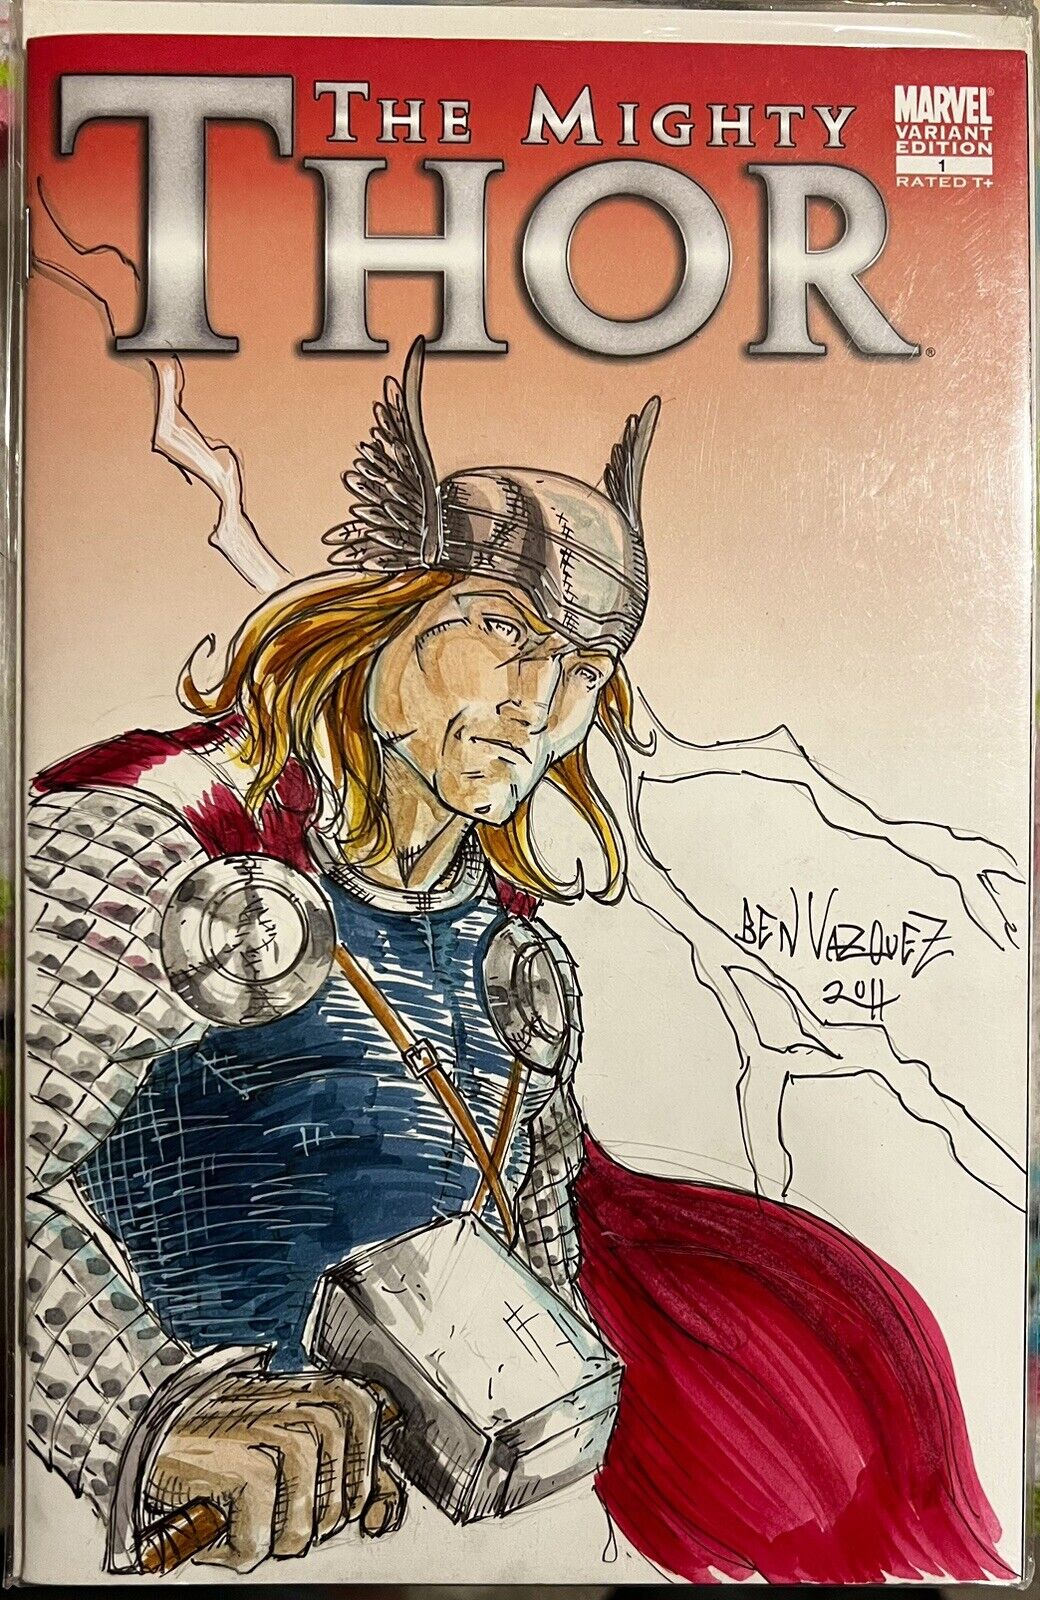 The Mighty Thor #1 Original Sketch Cover Ben Vazquez